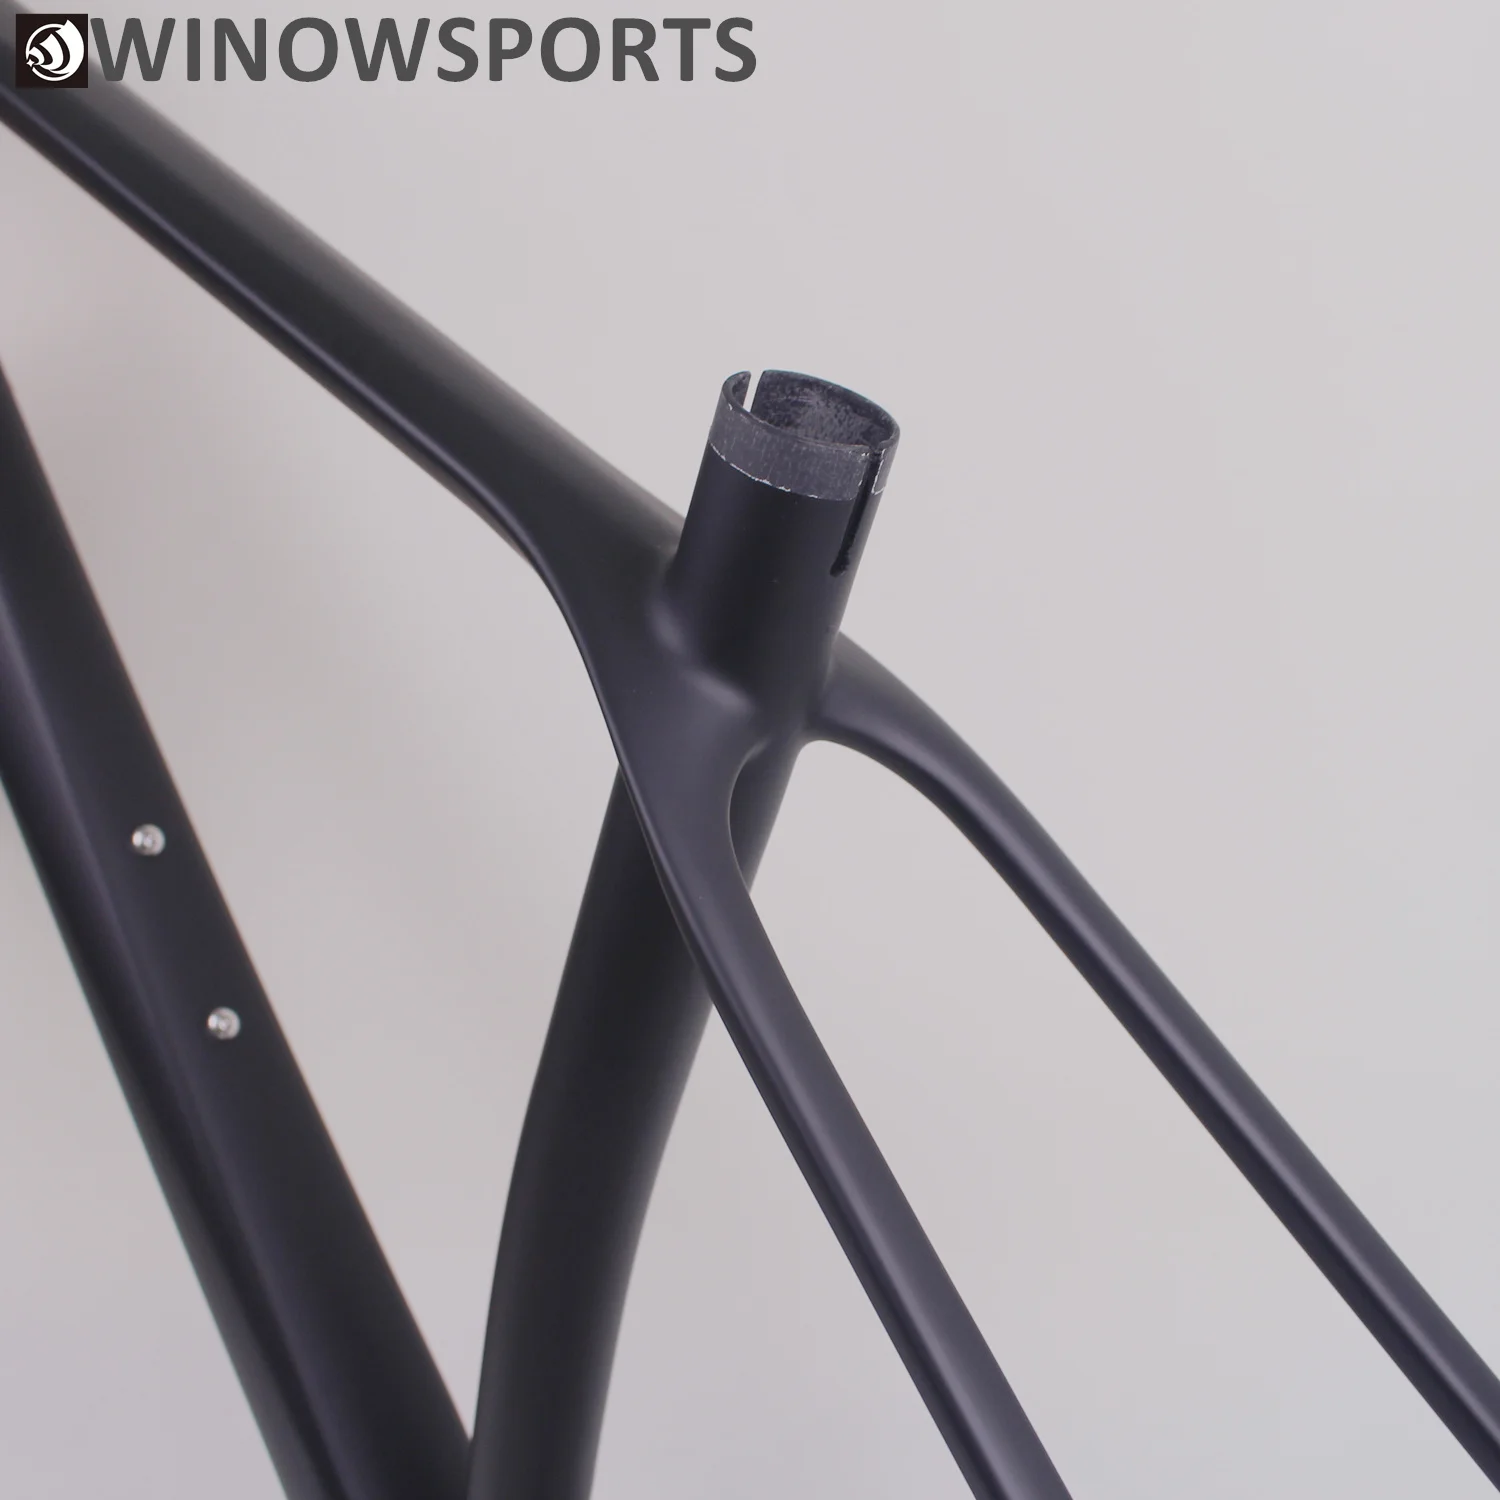 Winowsports UD черная матовая карбоновая mtb рама 29er Заводской oem дизайн Скотт-е boost 29 дюймов 148 мм задний интервал карбоновая велосипедная Рама